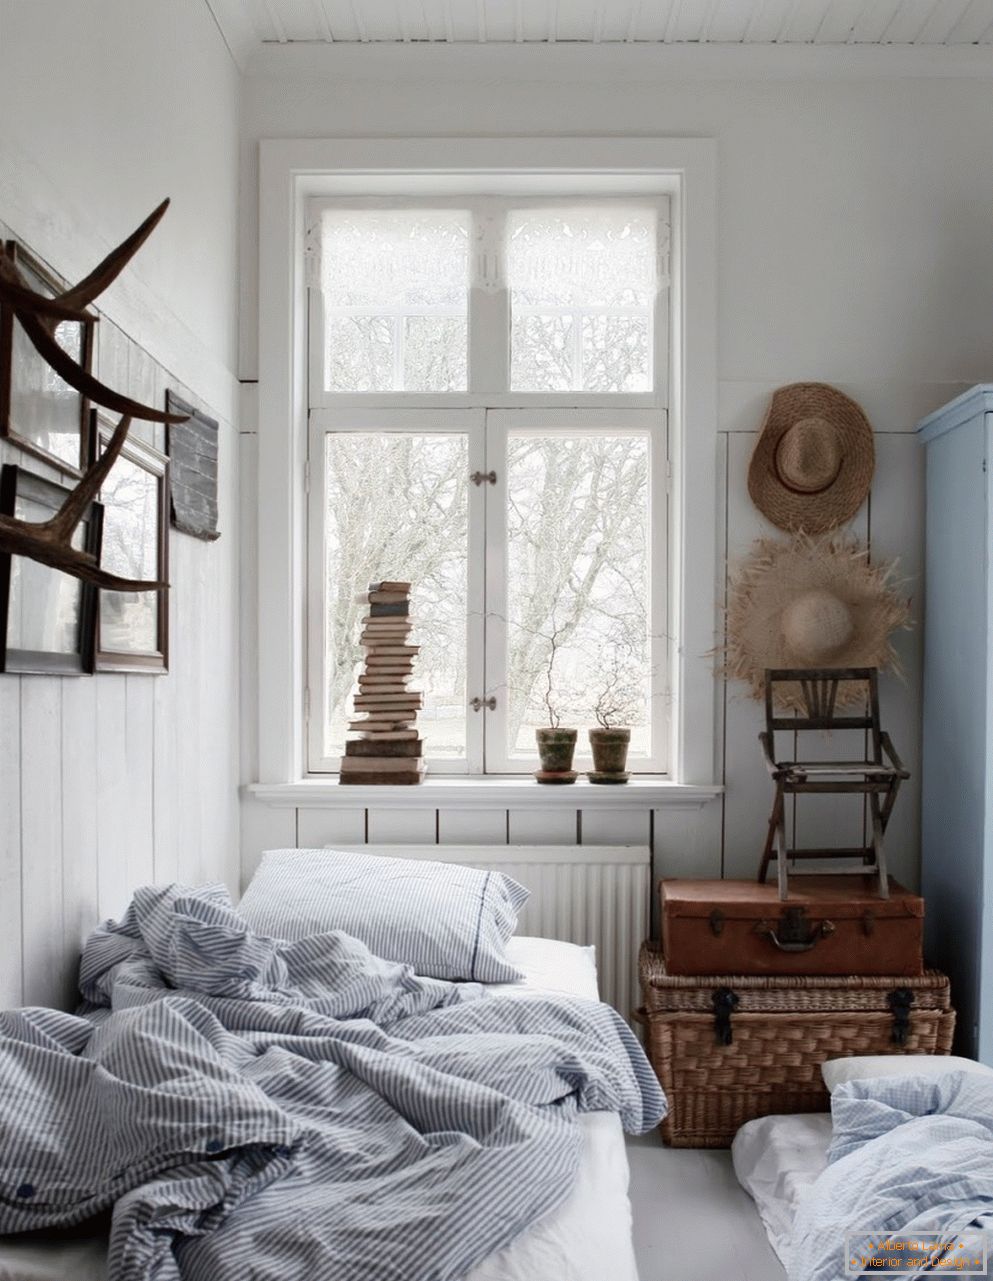 Skandinavski stil u unutrašnjosti spavaće sobe, njegove osobine i značajke